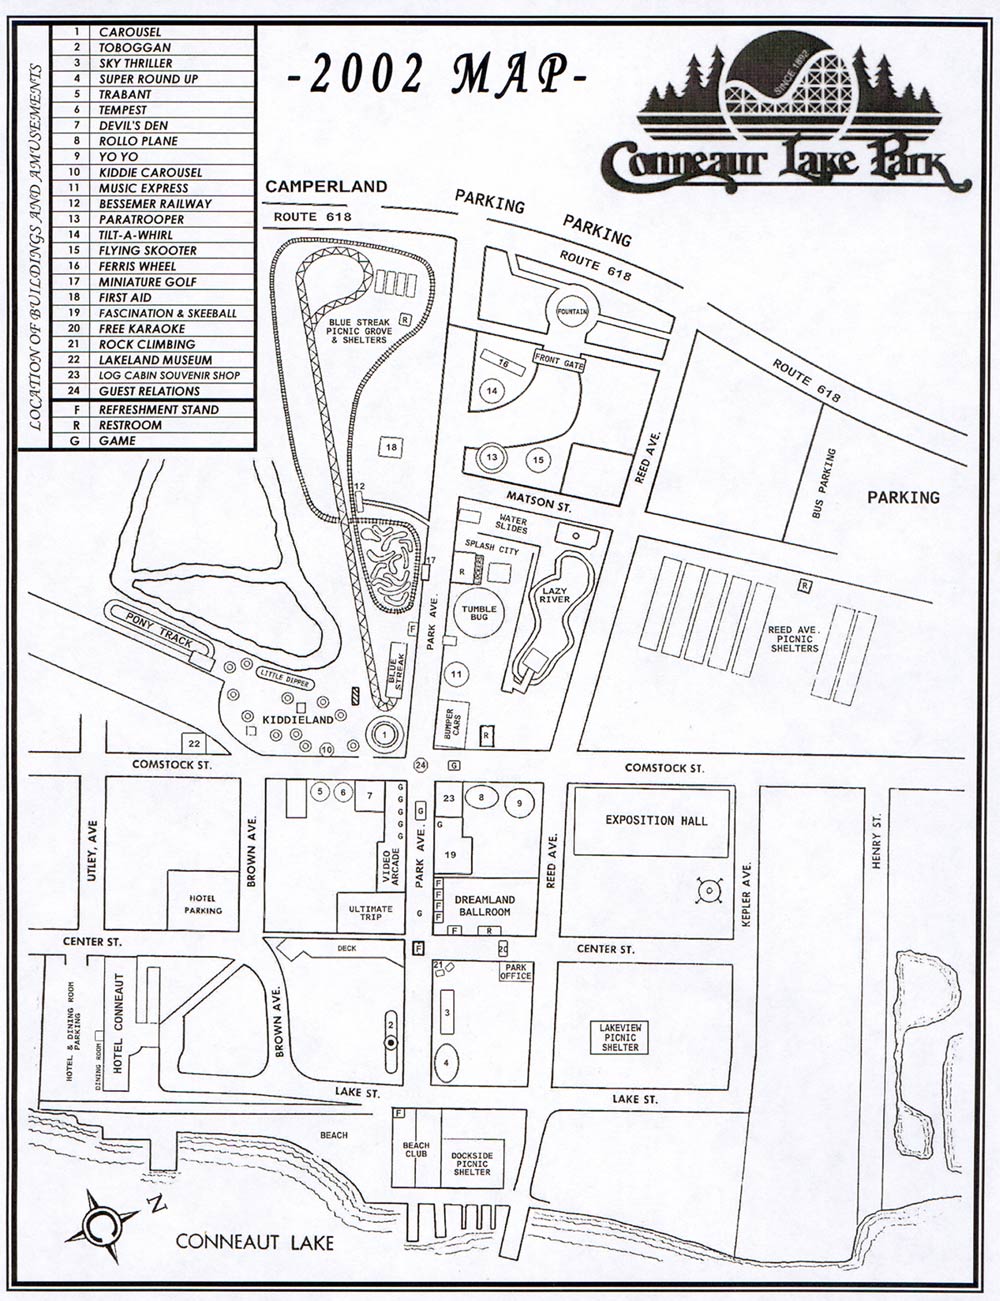 Conneaut Lake Park Map 2002